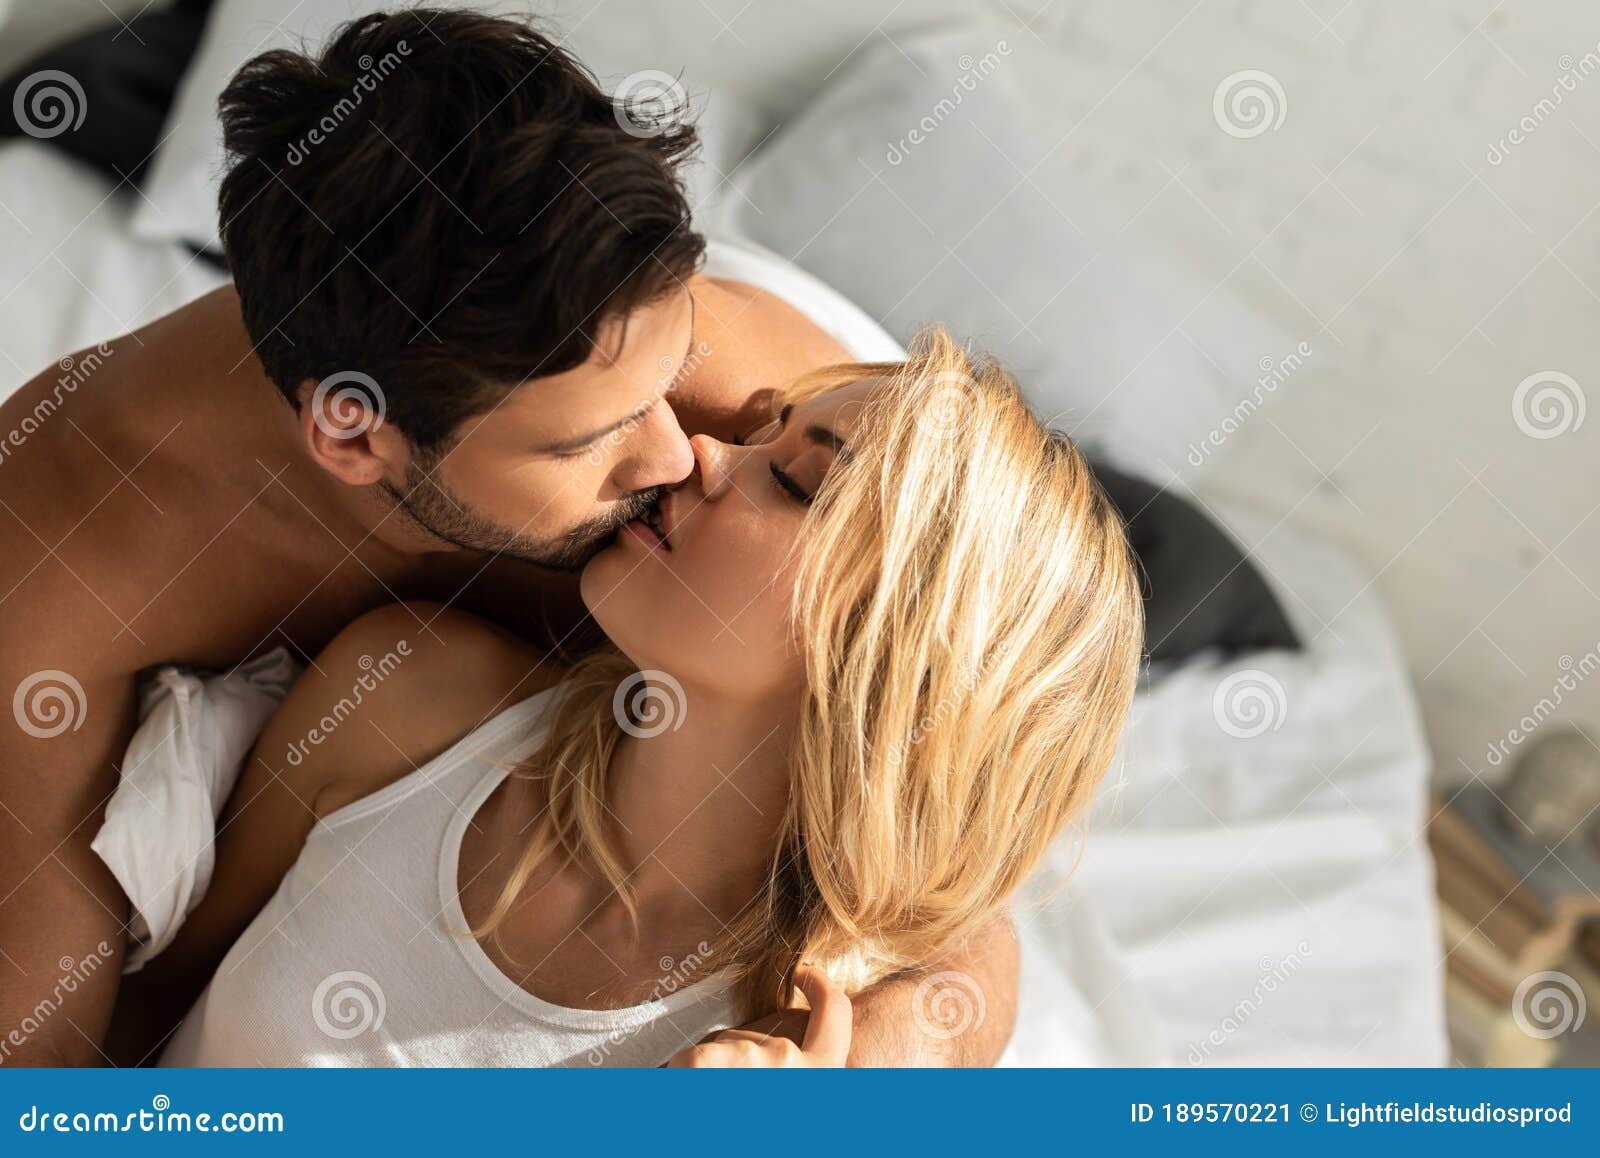 Пара целуется в постели Фото